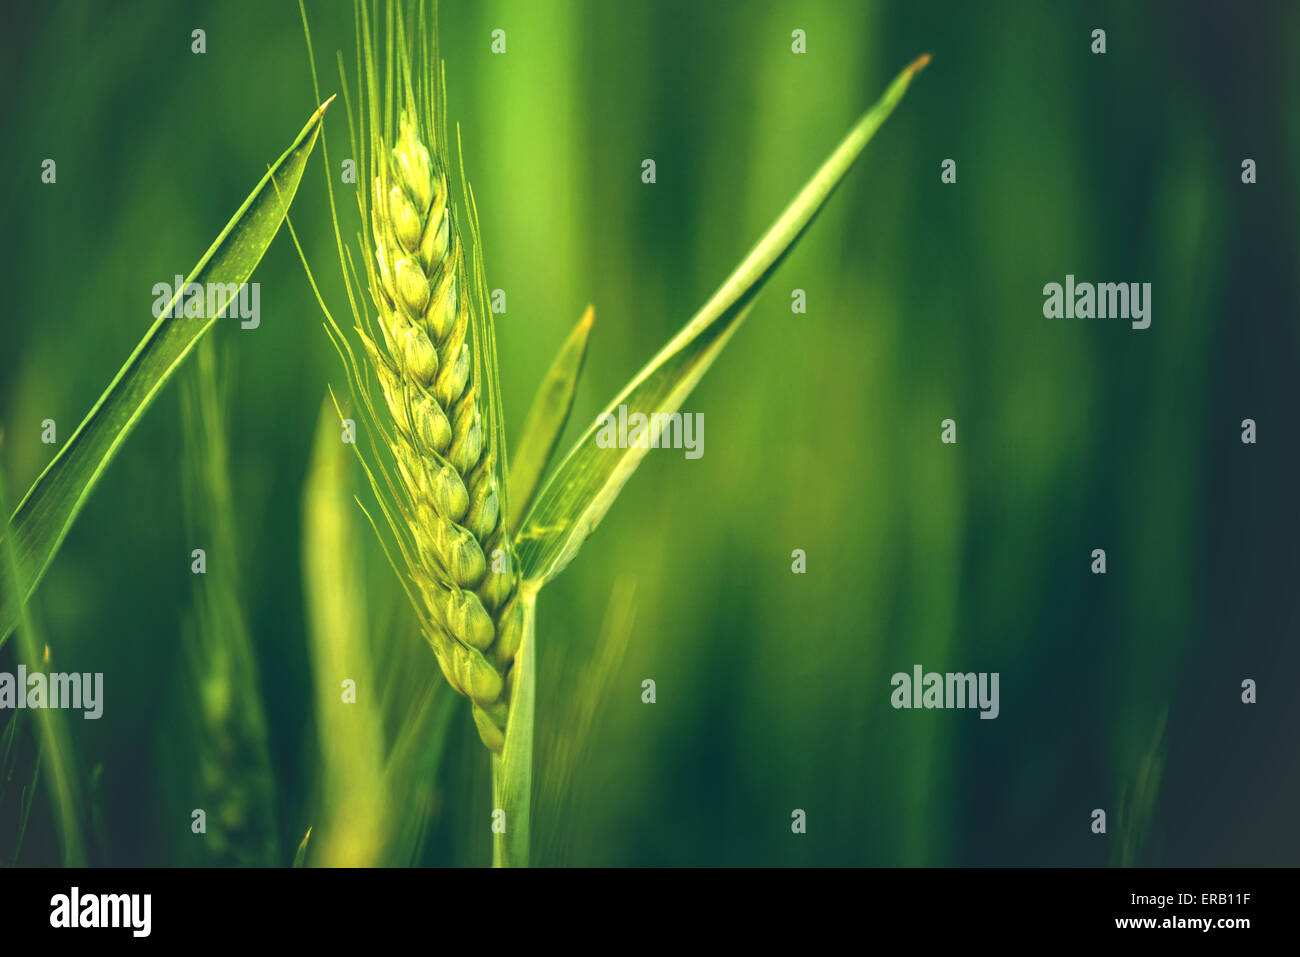 Grünen Weizen Kopf im Agrarbereich kultiviert, frühen Stadium der Landwirtschaft Pflanzenentwicklung, Retro getönten Bild Stockfoto